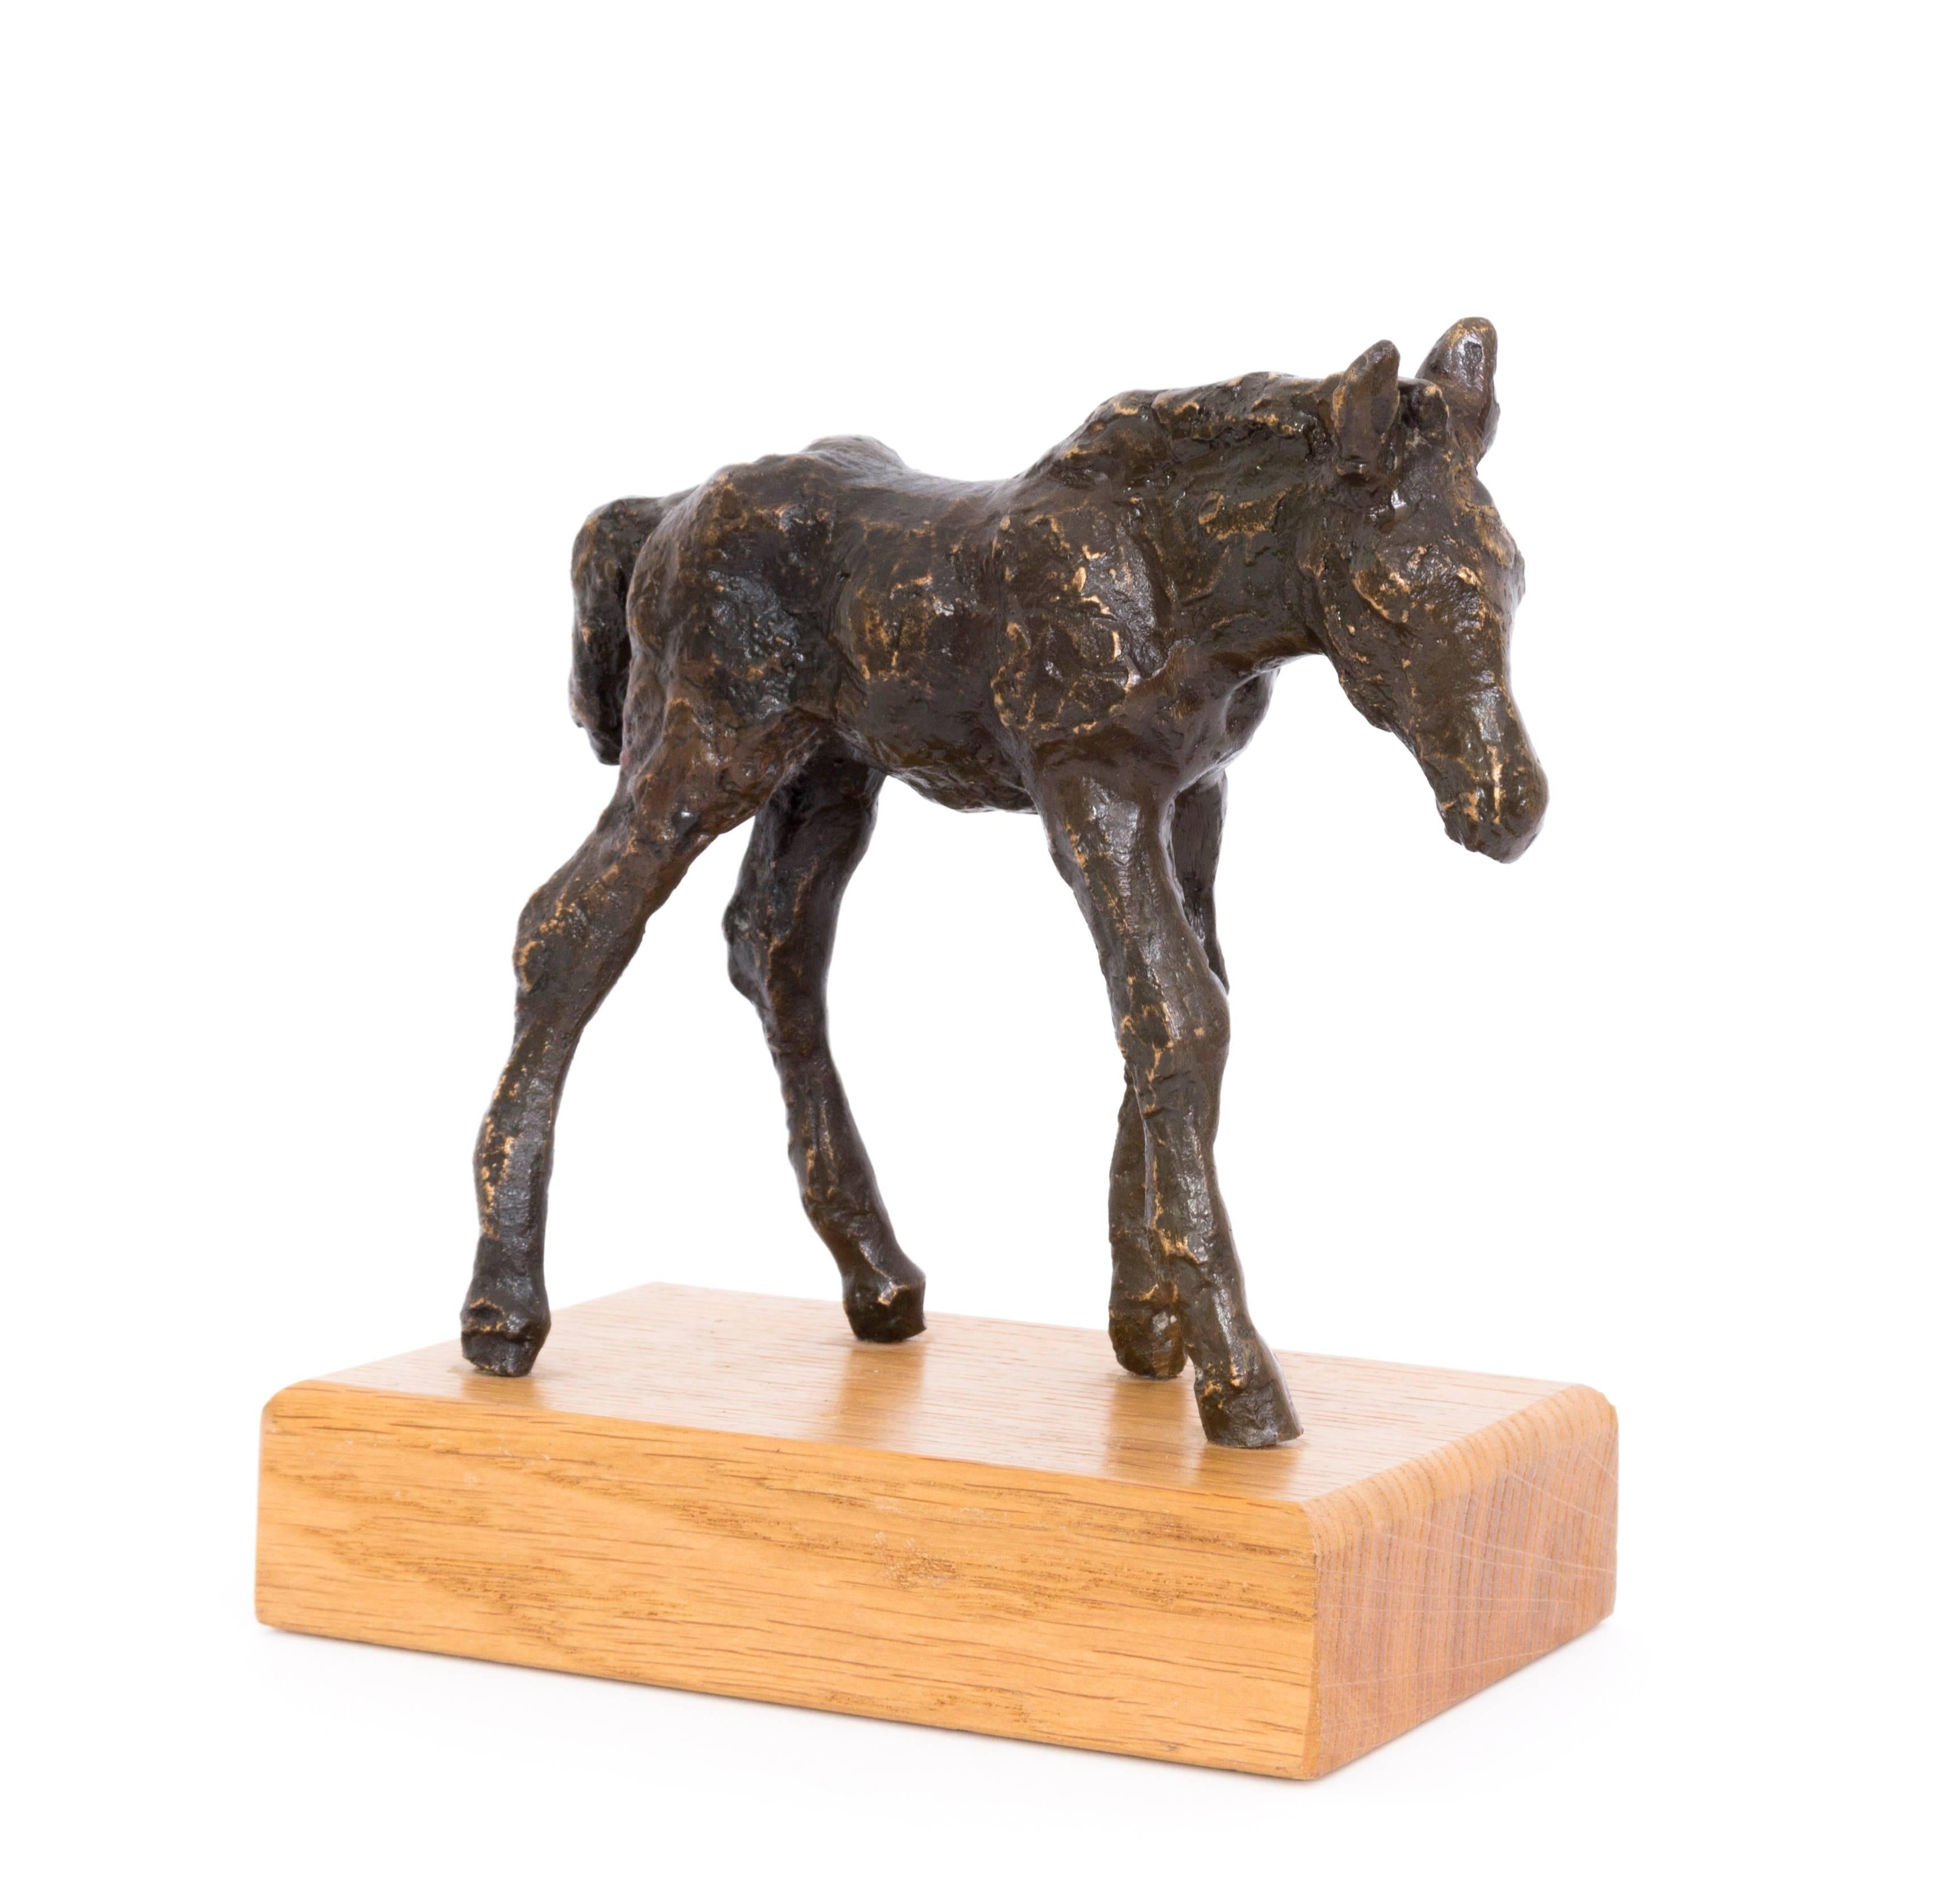 Hans Gerdes Figurative Sculpture - Fohlen (Foal) - Bronze, Sculpture, Animal, Modern, 1970's, Wooden Plinth